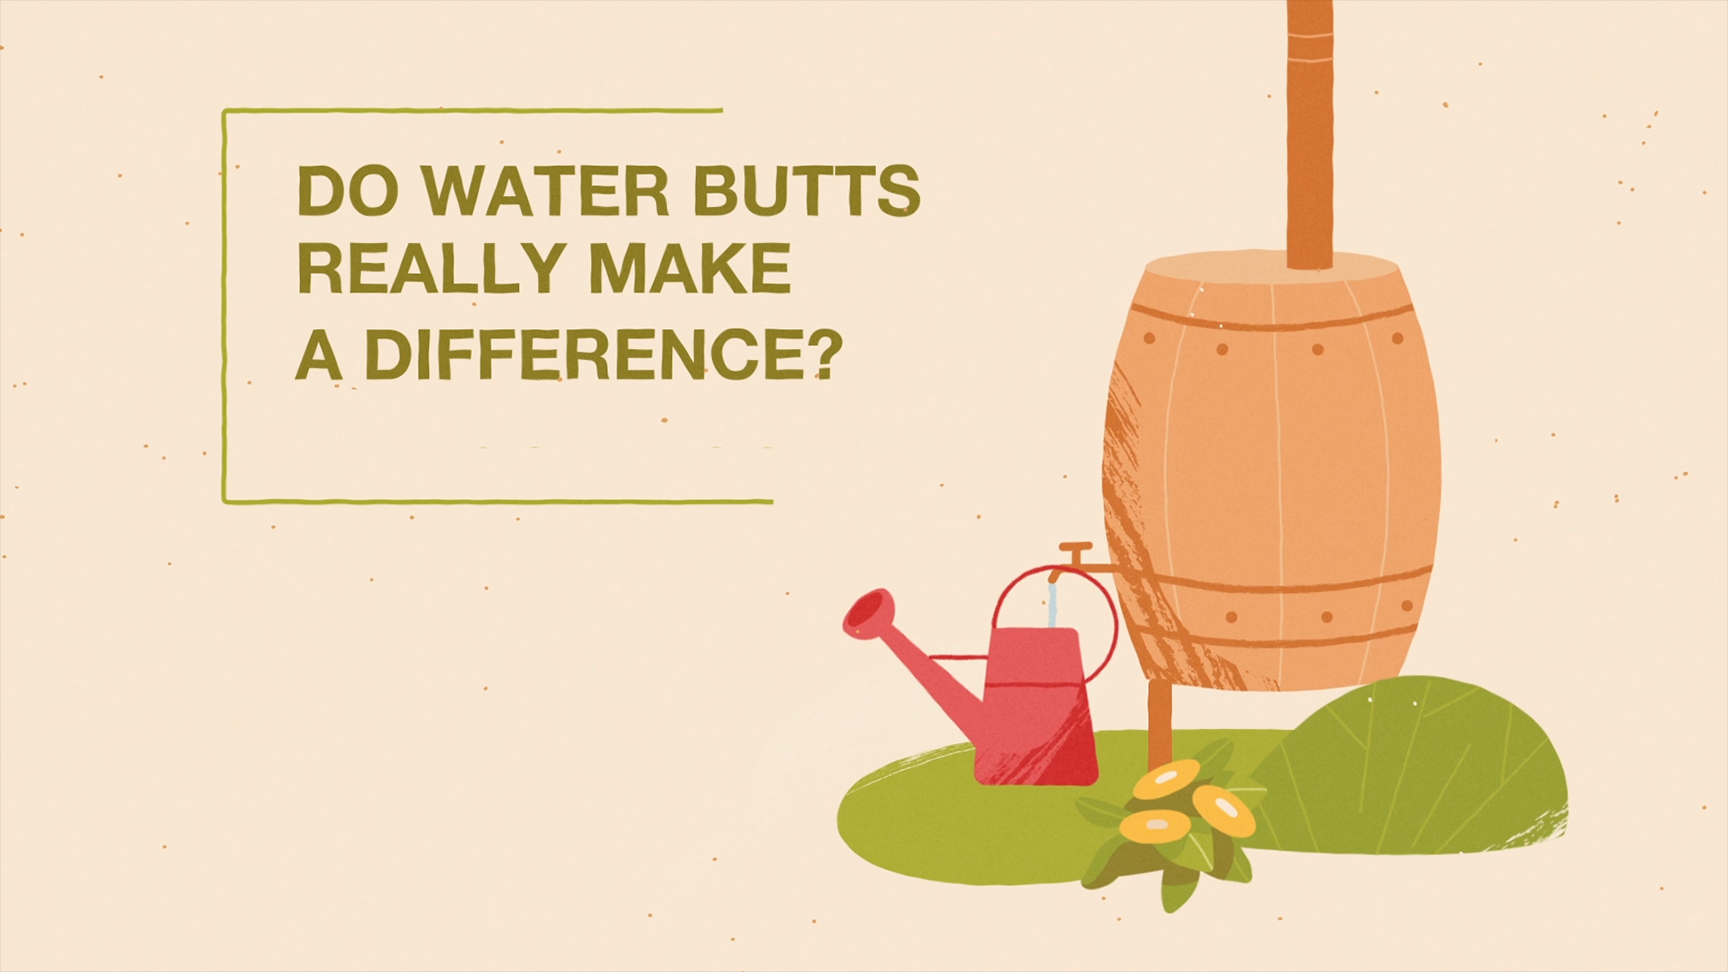 Les réservoirs d'eau font-ils une vraie différence ?